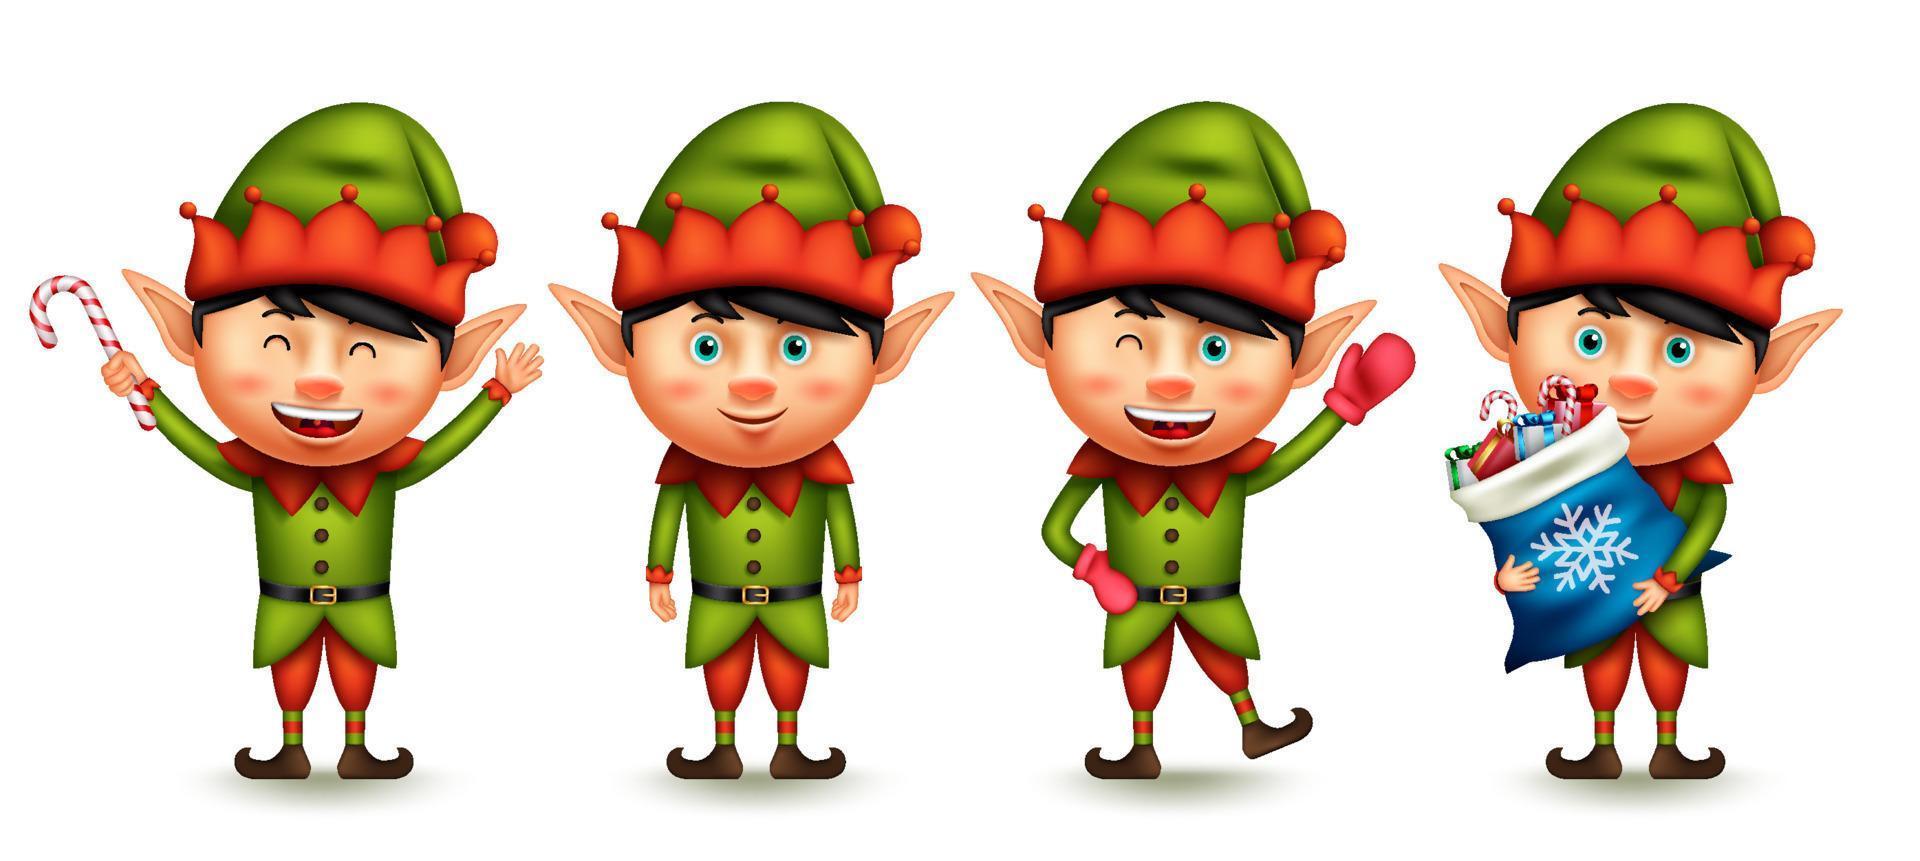 insieme di vettore del carattere dell'elfo di natale. elfi del ragazzo personaggi 3d che salutano, tengono in mano e fanno regali di bastoncini di zucchero per la collezione di design natalizi dei simpatici nani di babbo natale. illustrazione vettoriale.